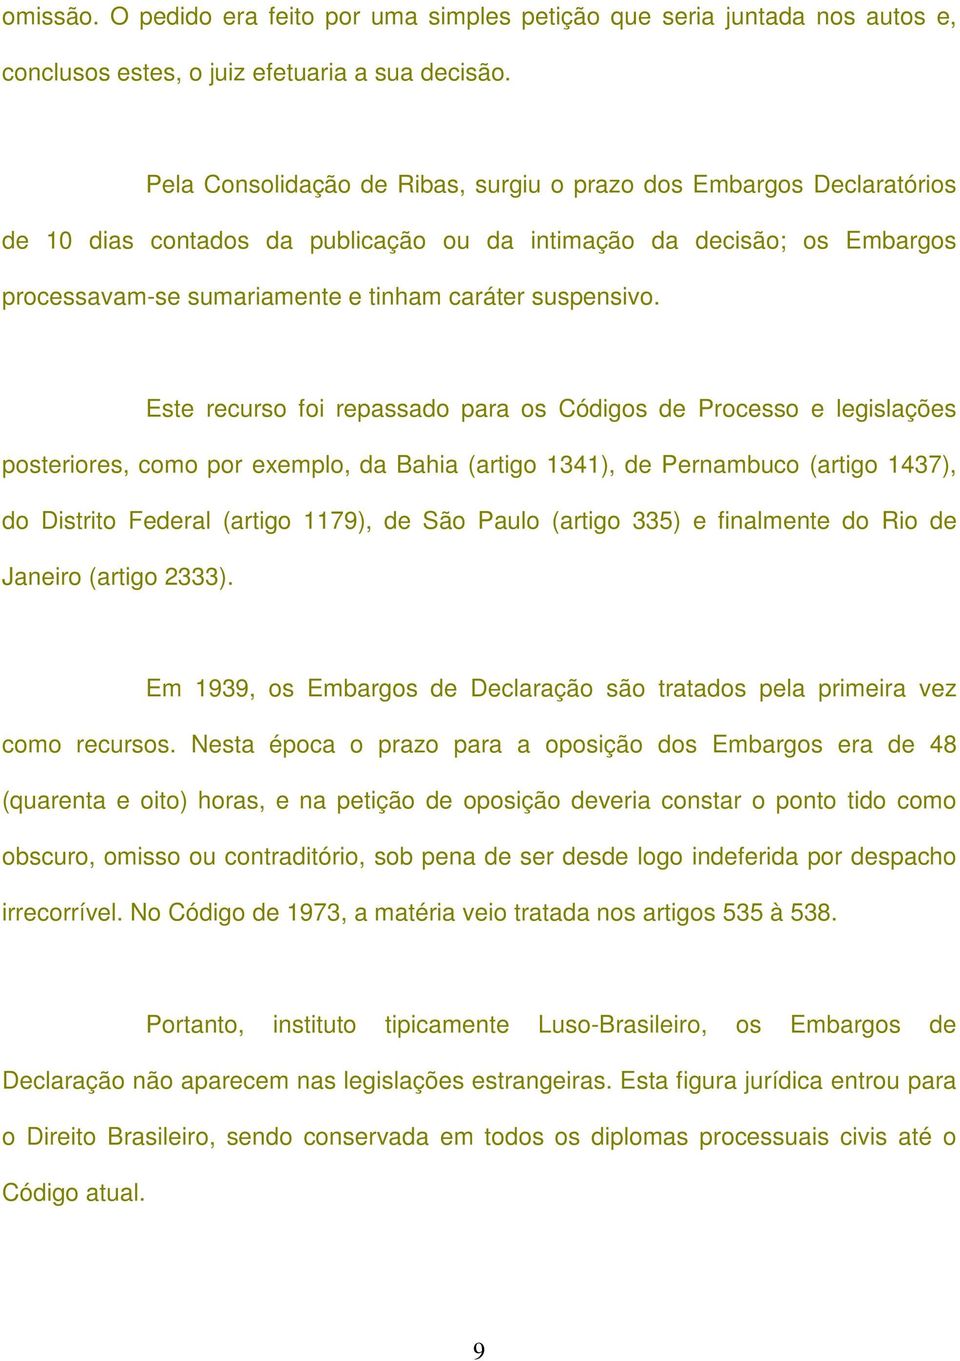 Este recurso foi repassado para os Códigos de Processo e legislações posteriores, como por exemplo, da Bahia (artigo 1341), de Pernambuco (artigo 1437), do Distrito Federal (artigo 1179), de São